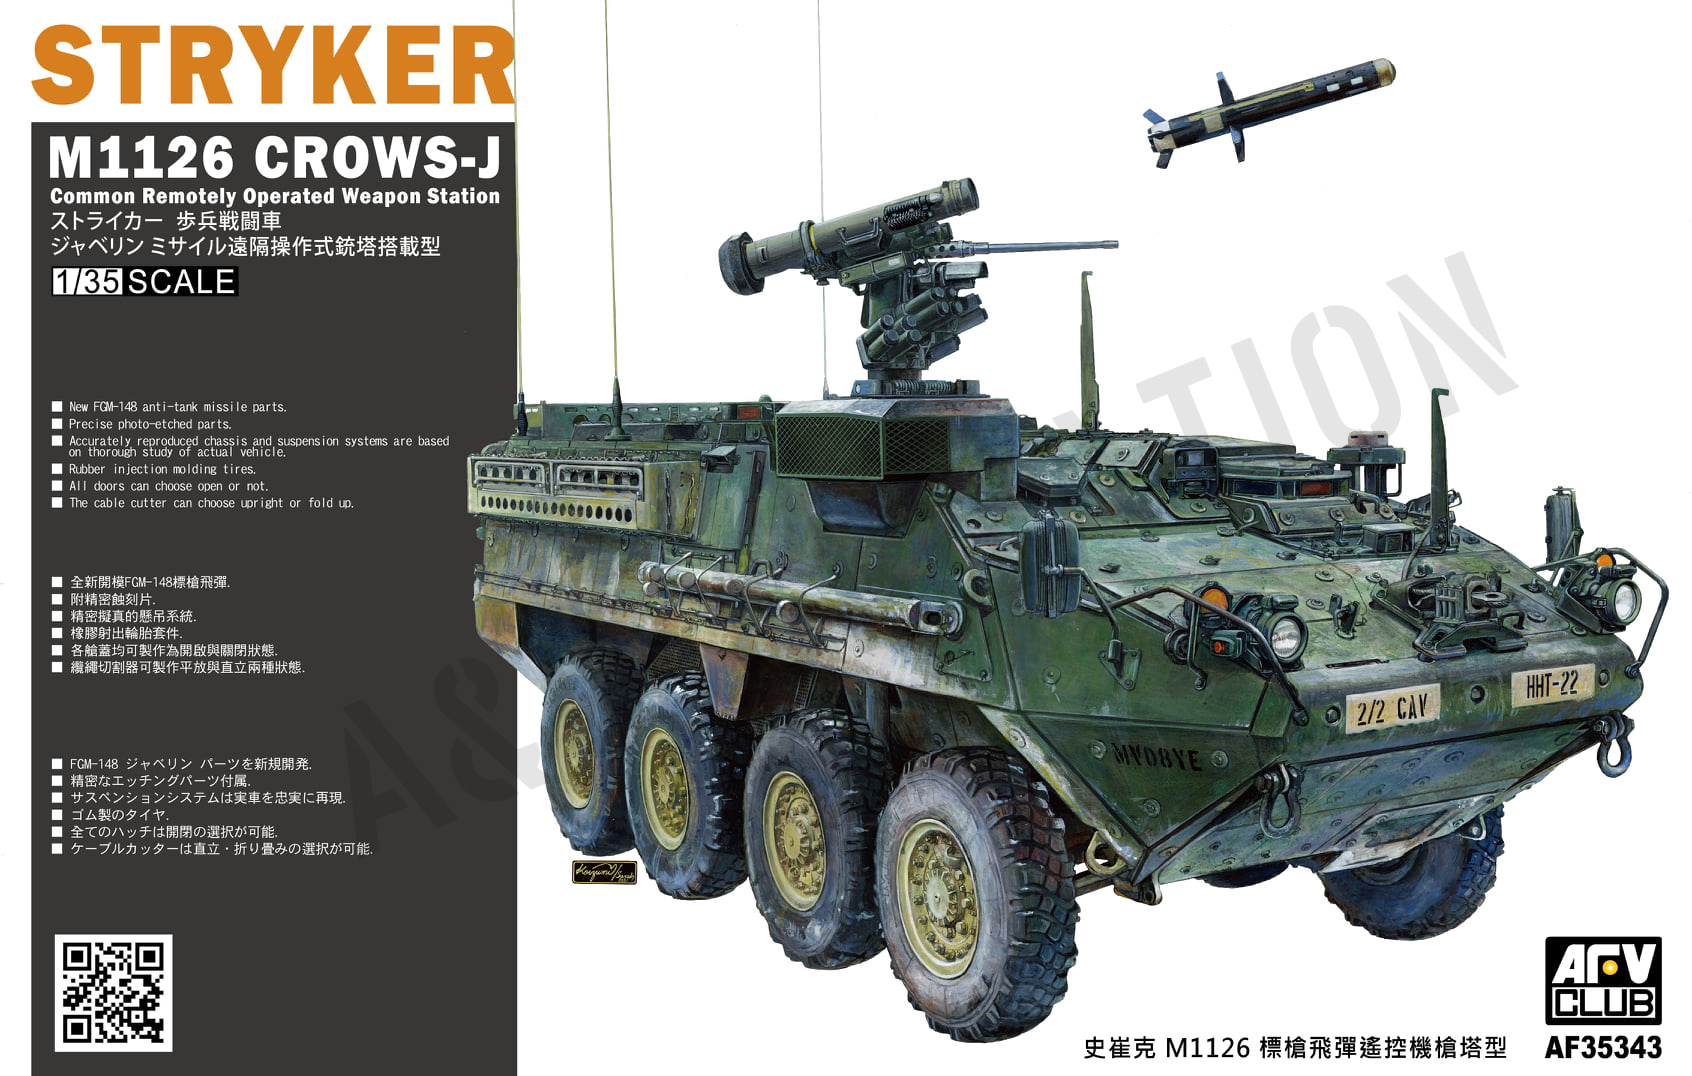 AF35343 M1123 Stryker CROWS-J